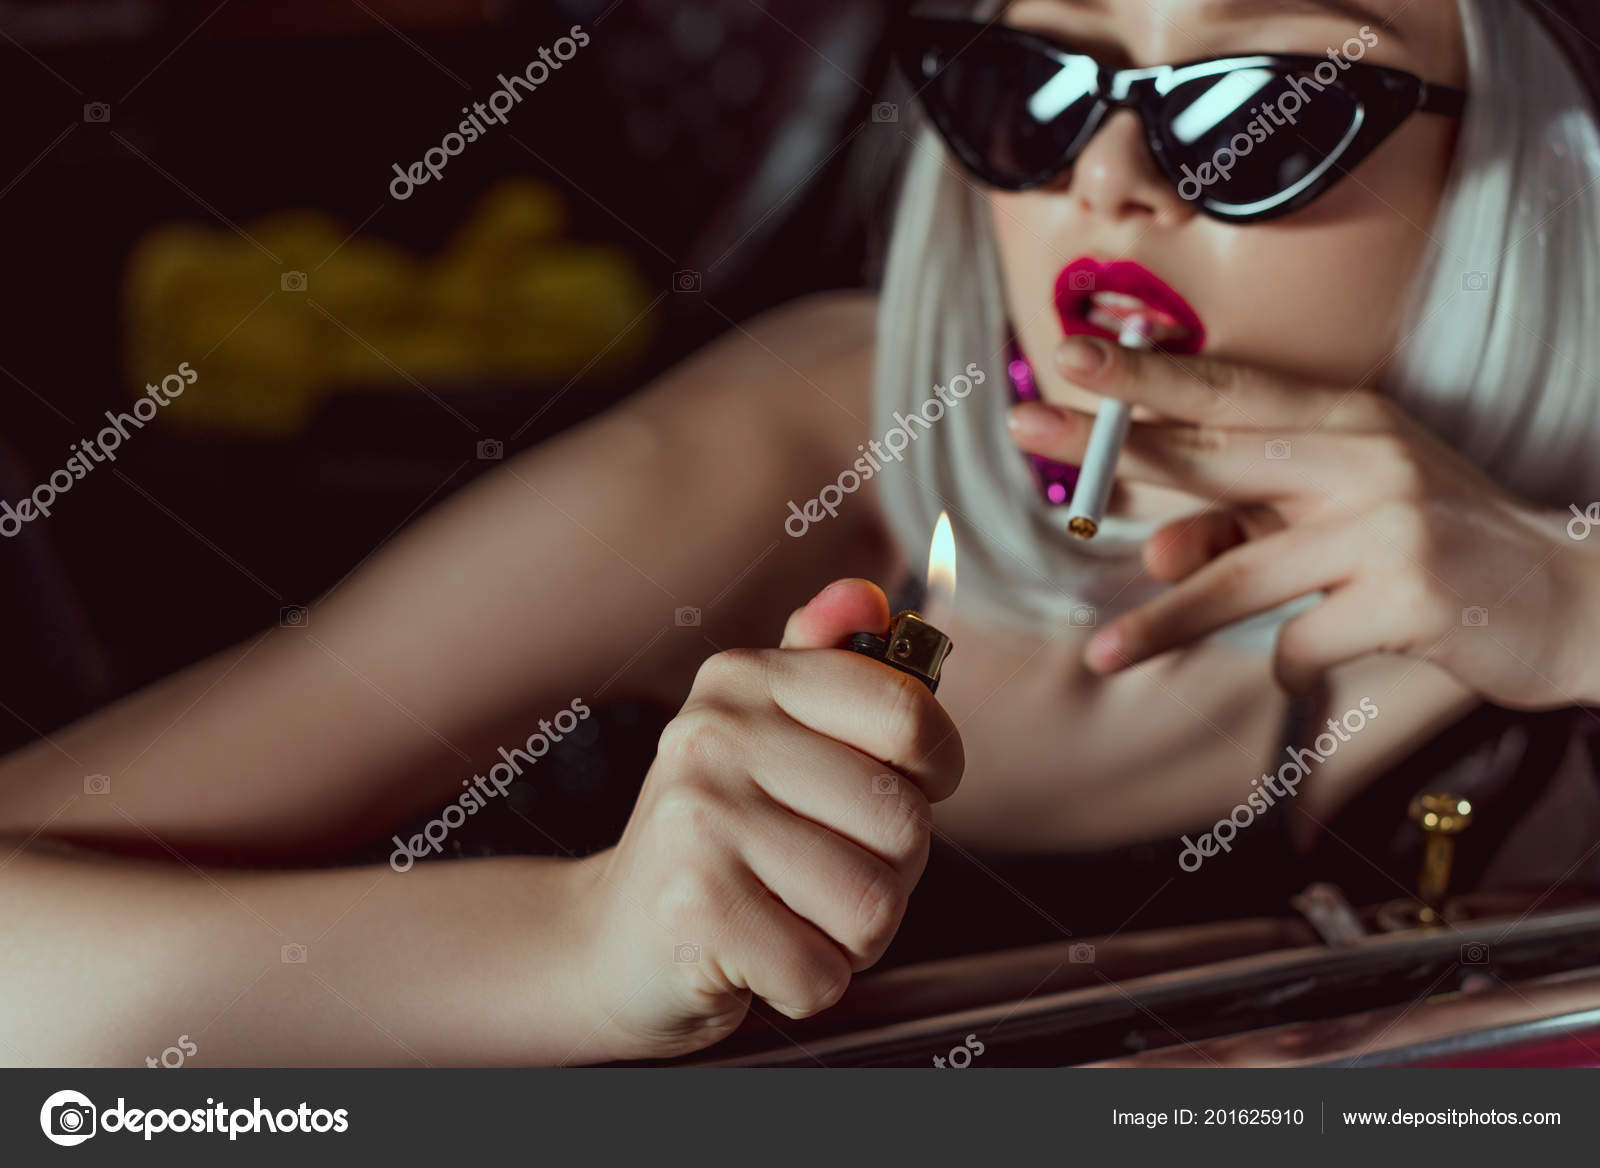 Горячая блондинка курит сигарету и сосет член бойфренда